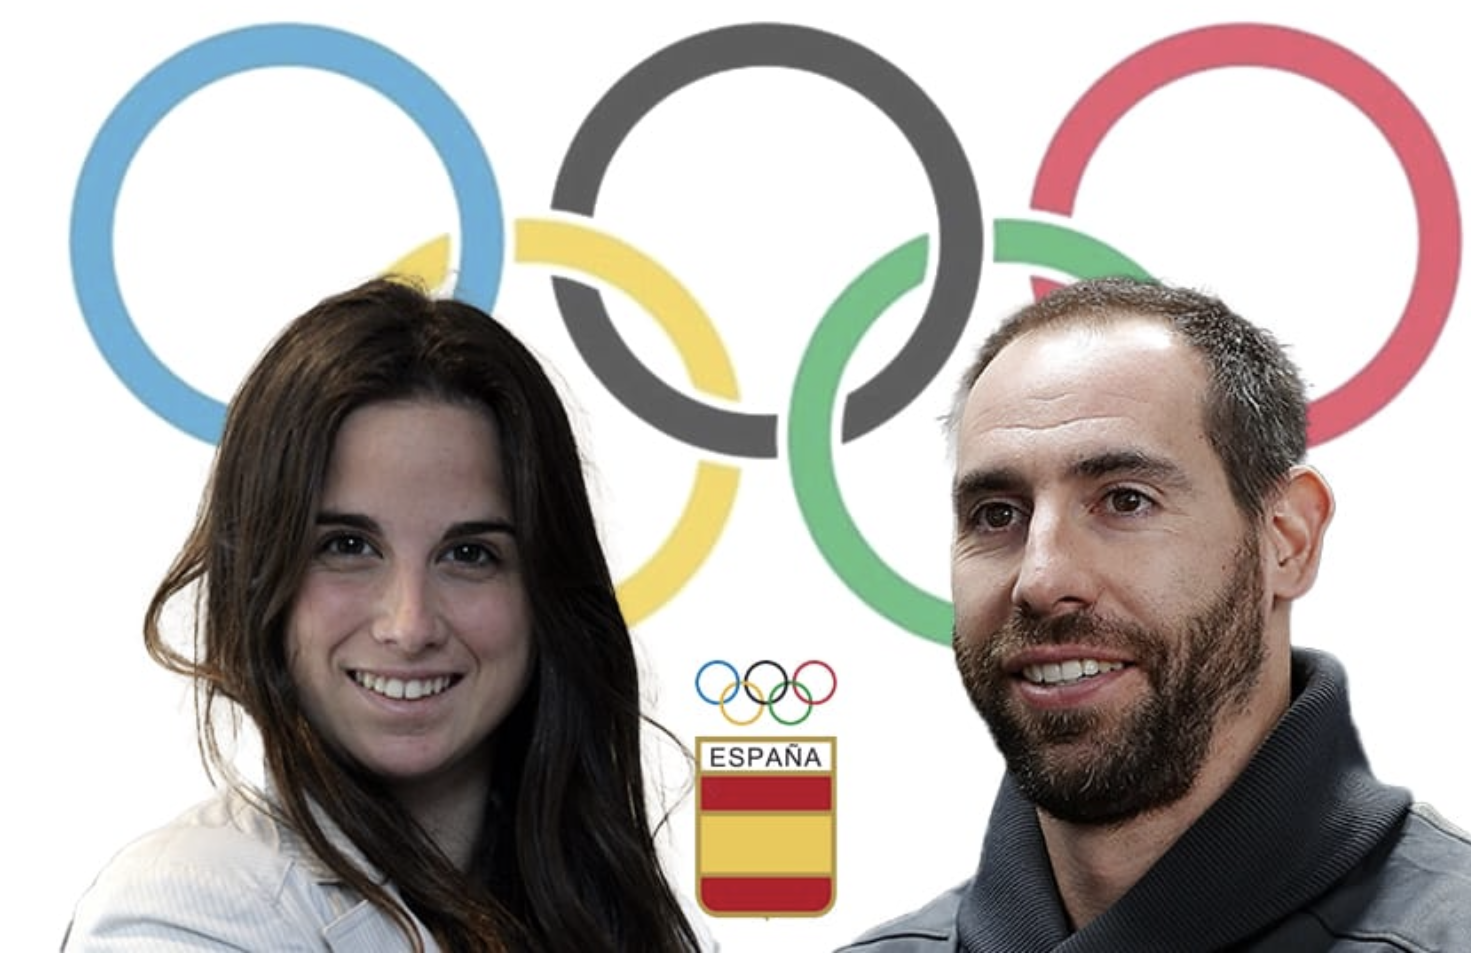 Ander Mirambell y Queralt Castellet. Fuente: Comité Olímpico Español